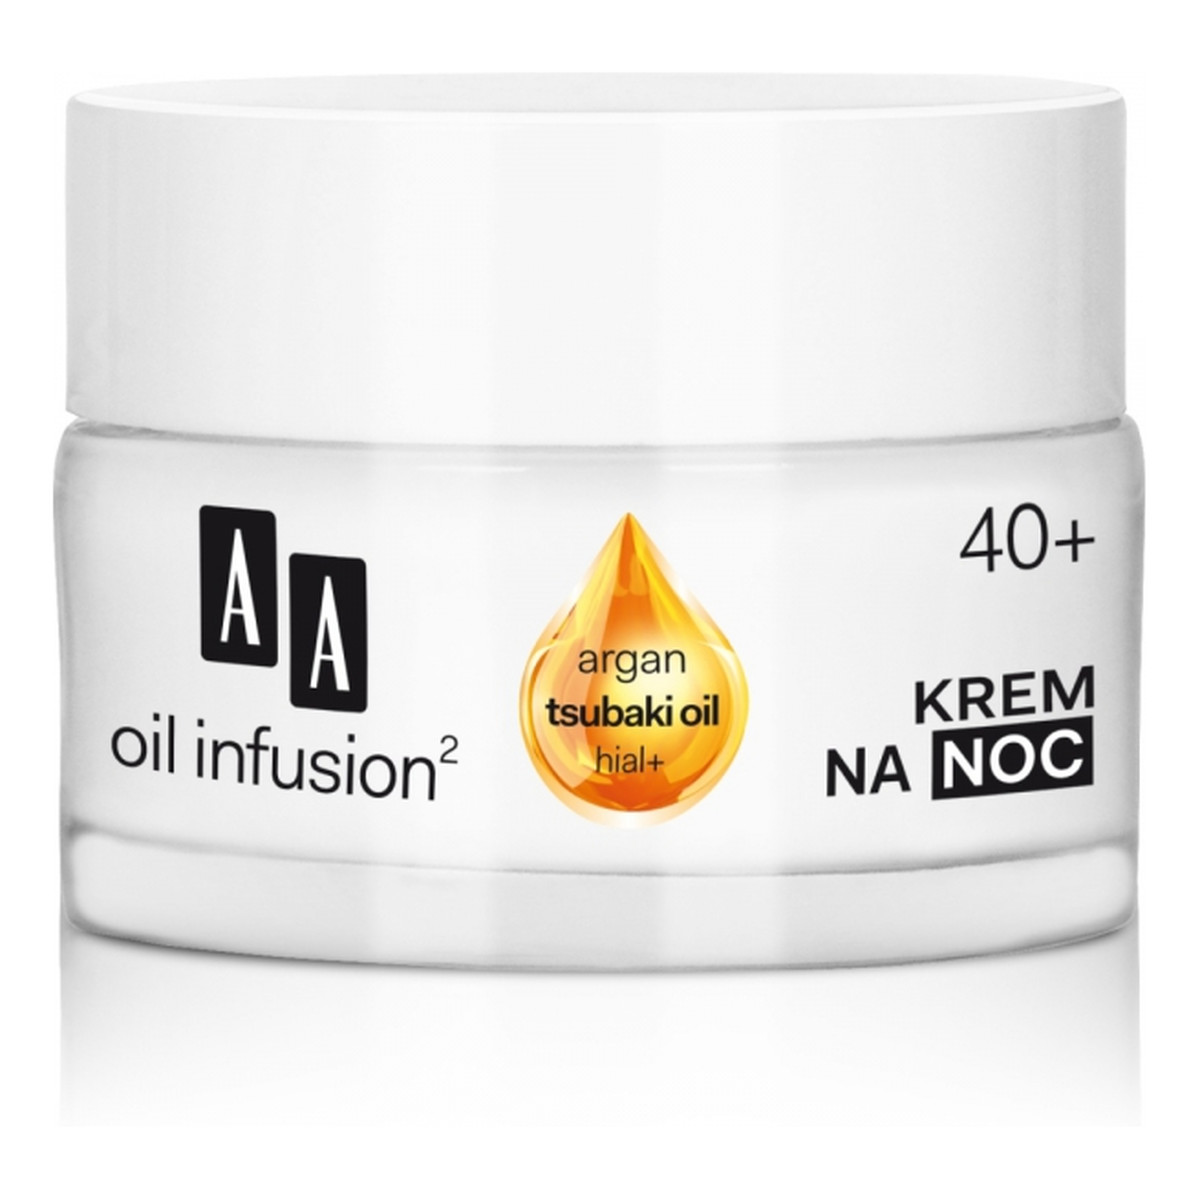 AA Oil Infusion2 40+ Krem Regeneracja + Sprężystość Na Noc 50ml